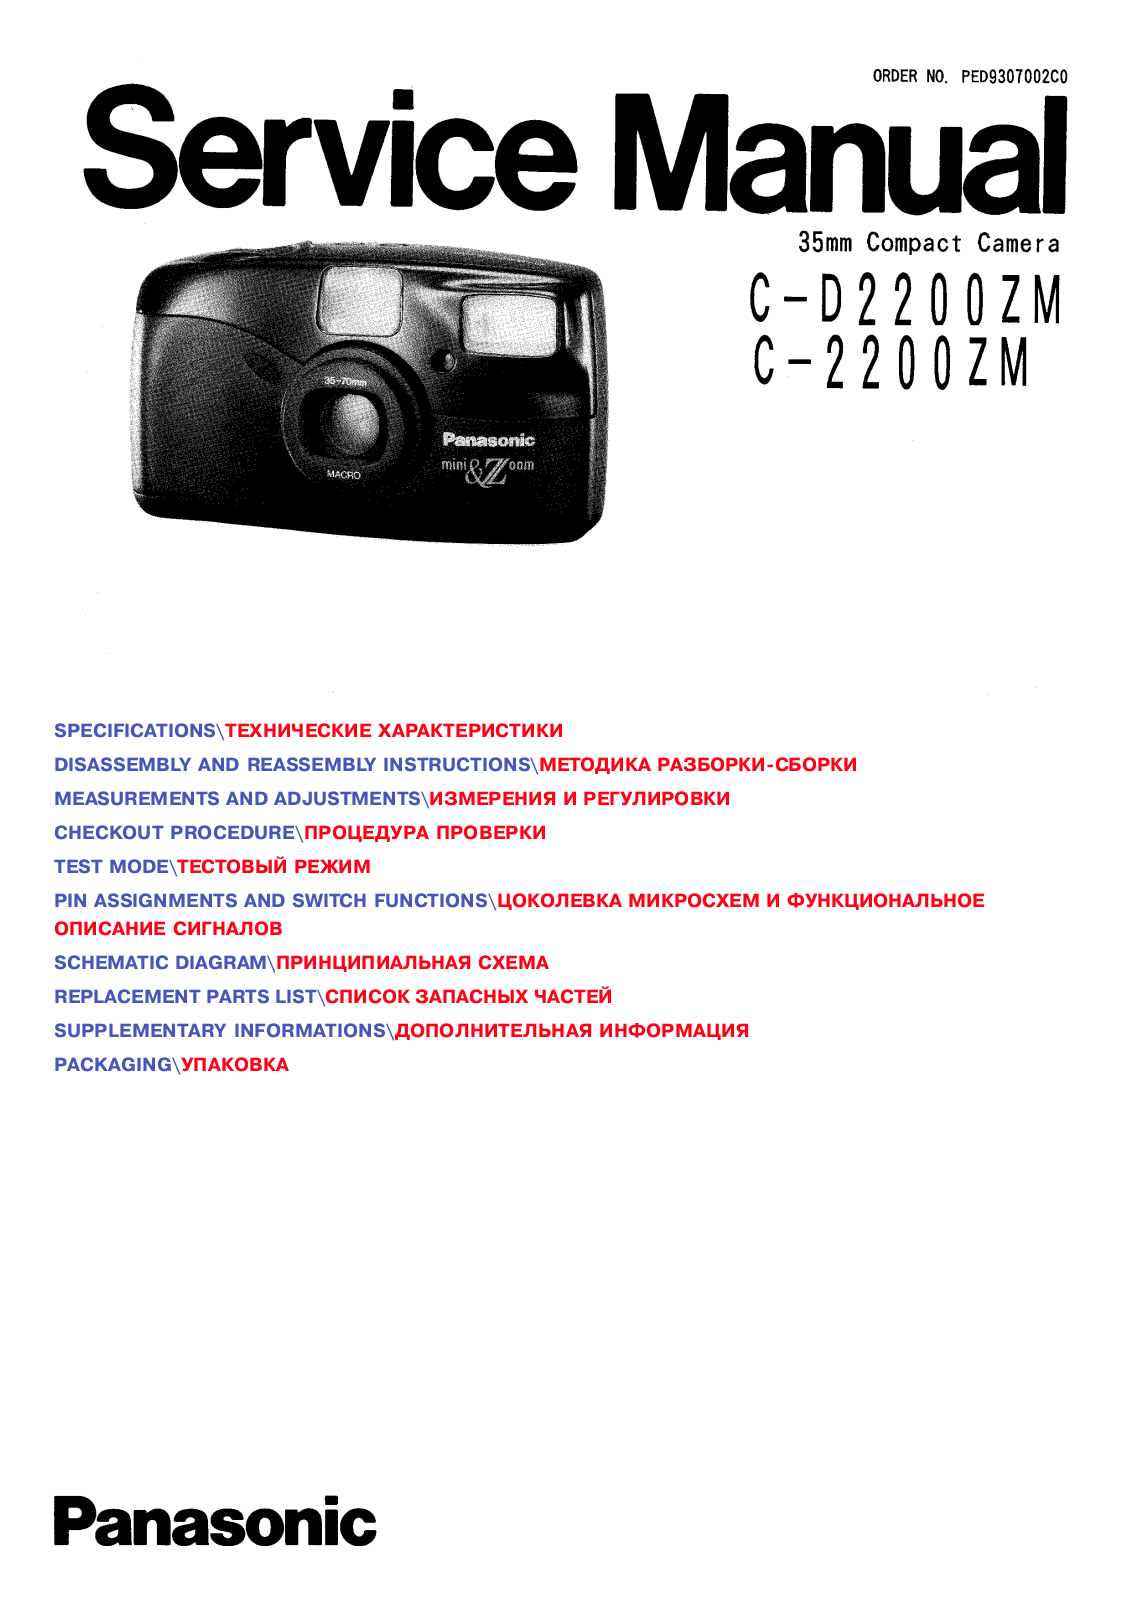 Panasonic C-2200ZM, C-D2200ZM Service Manual